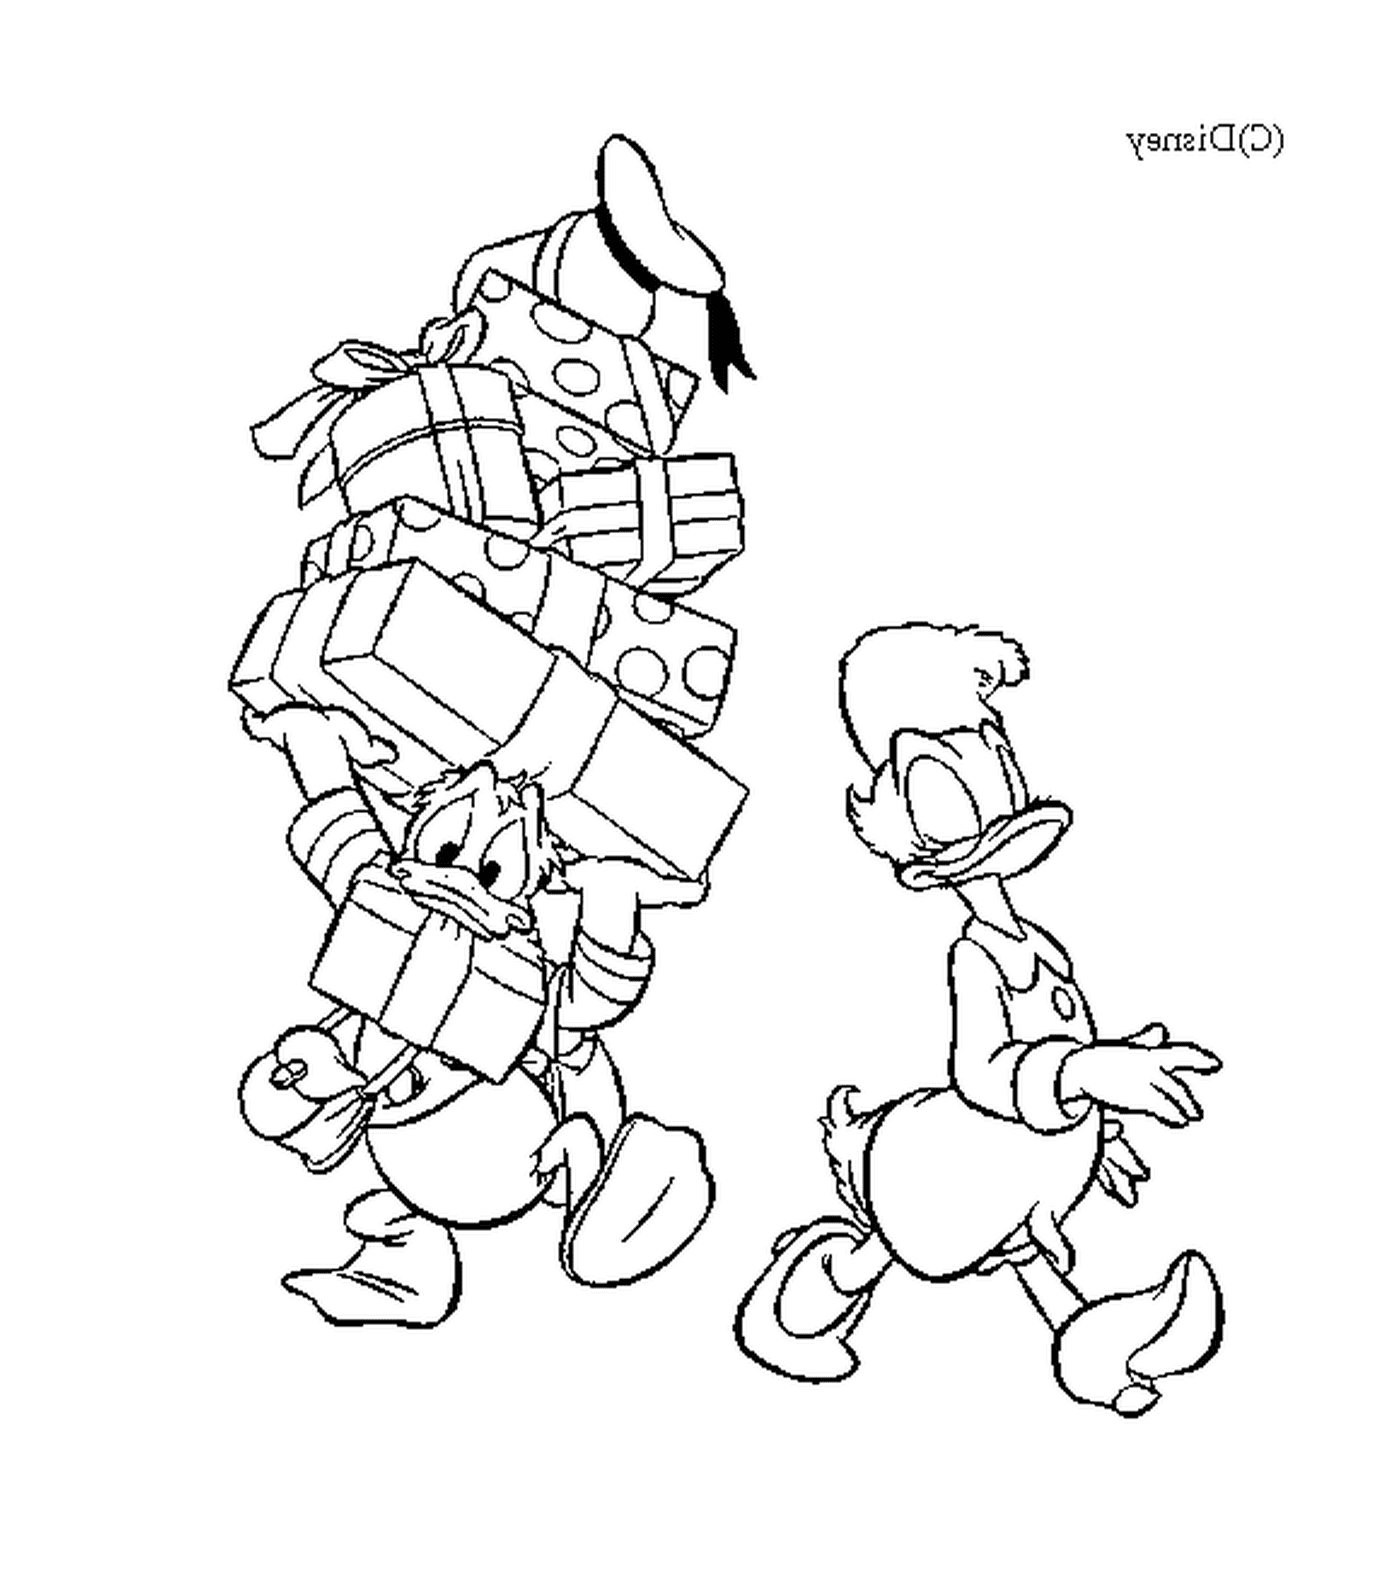  Donald sta aiutando Daisy a portare i regali 